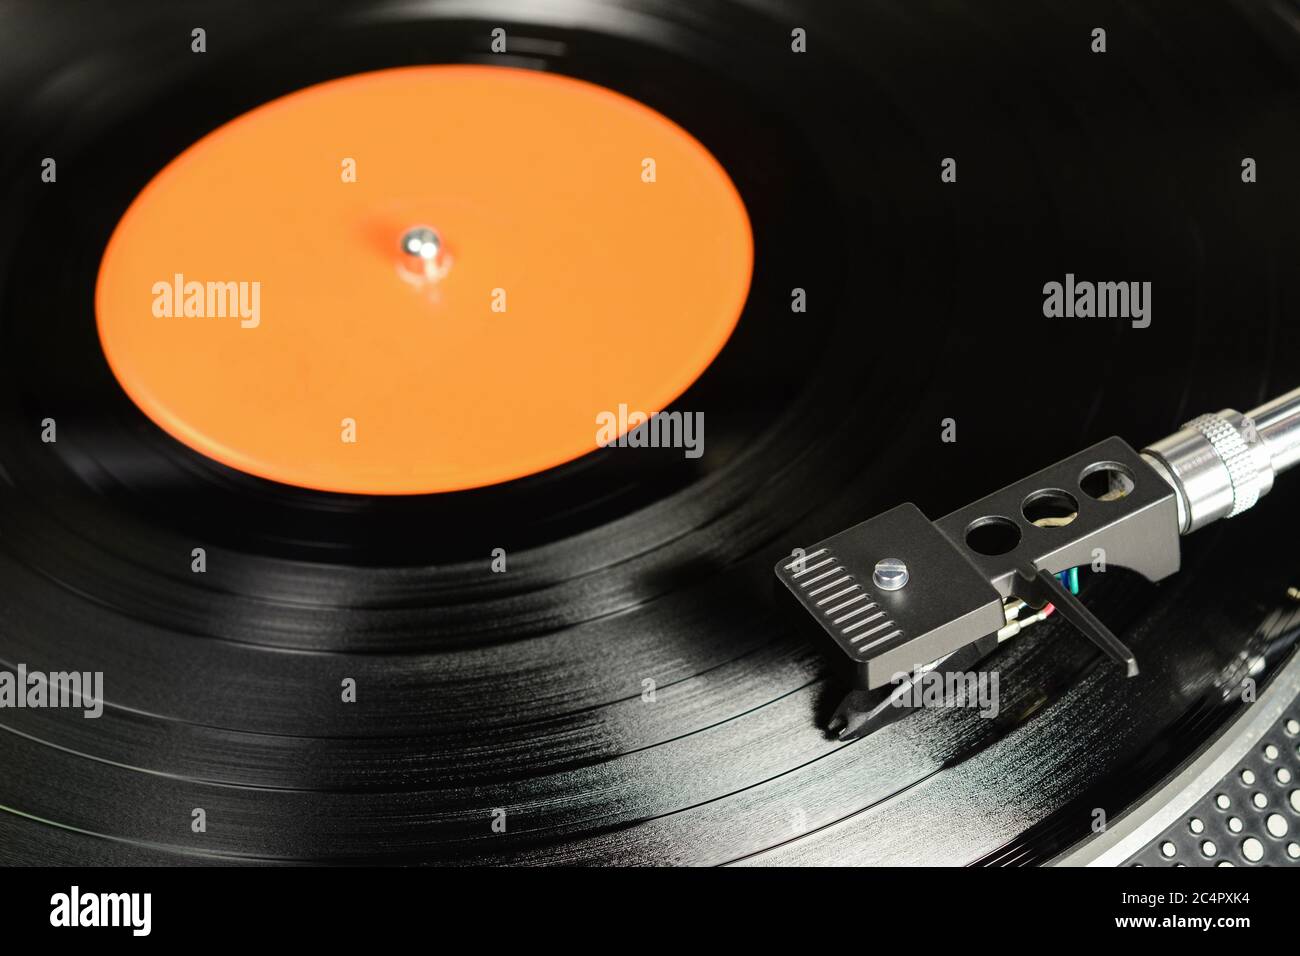 Vinylplatte mit leerem orangenen Label, auf dem Plattenspieler mit audiophiler Kassette gespielt. Stockfoto